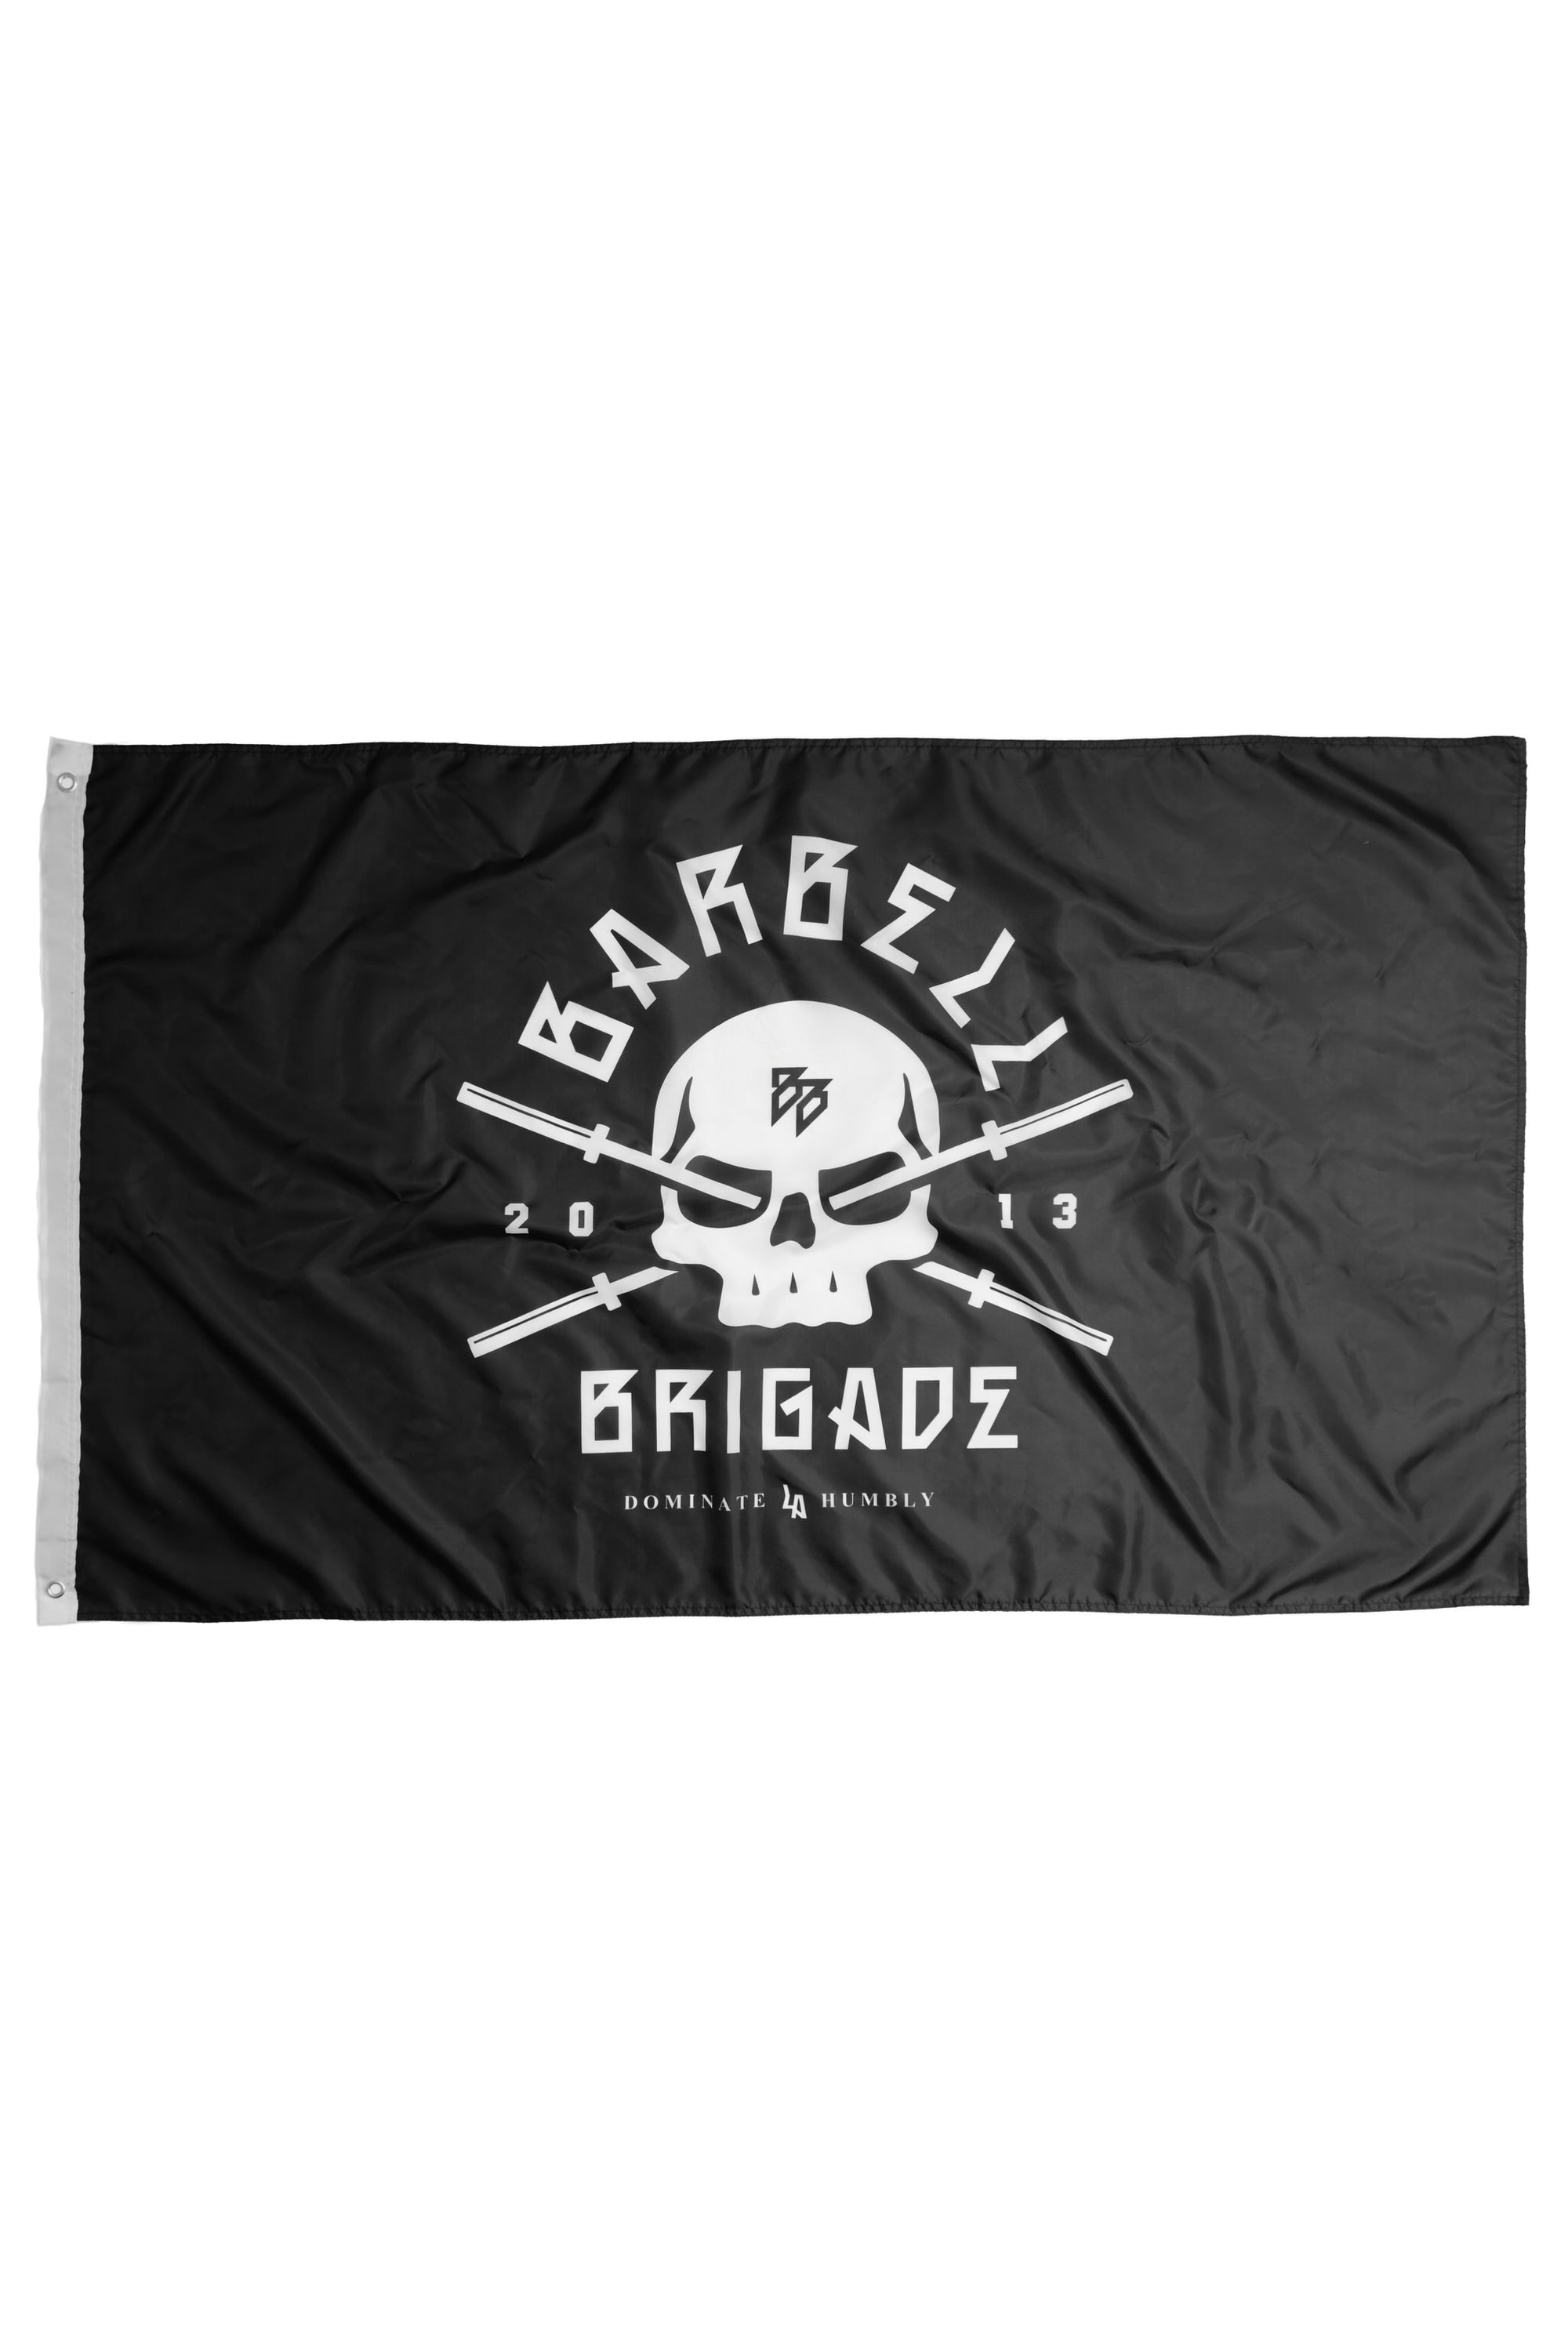 BB Nation 2.0 - Flag (Black)